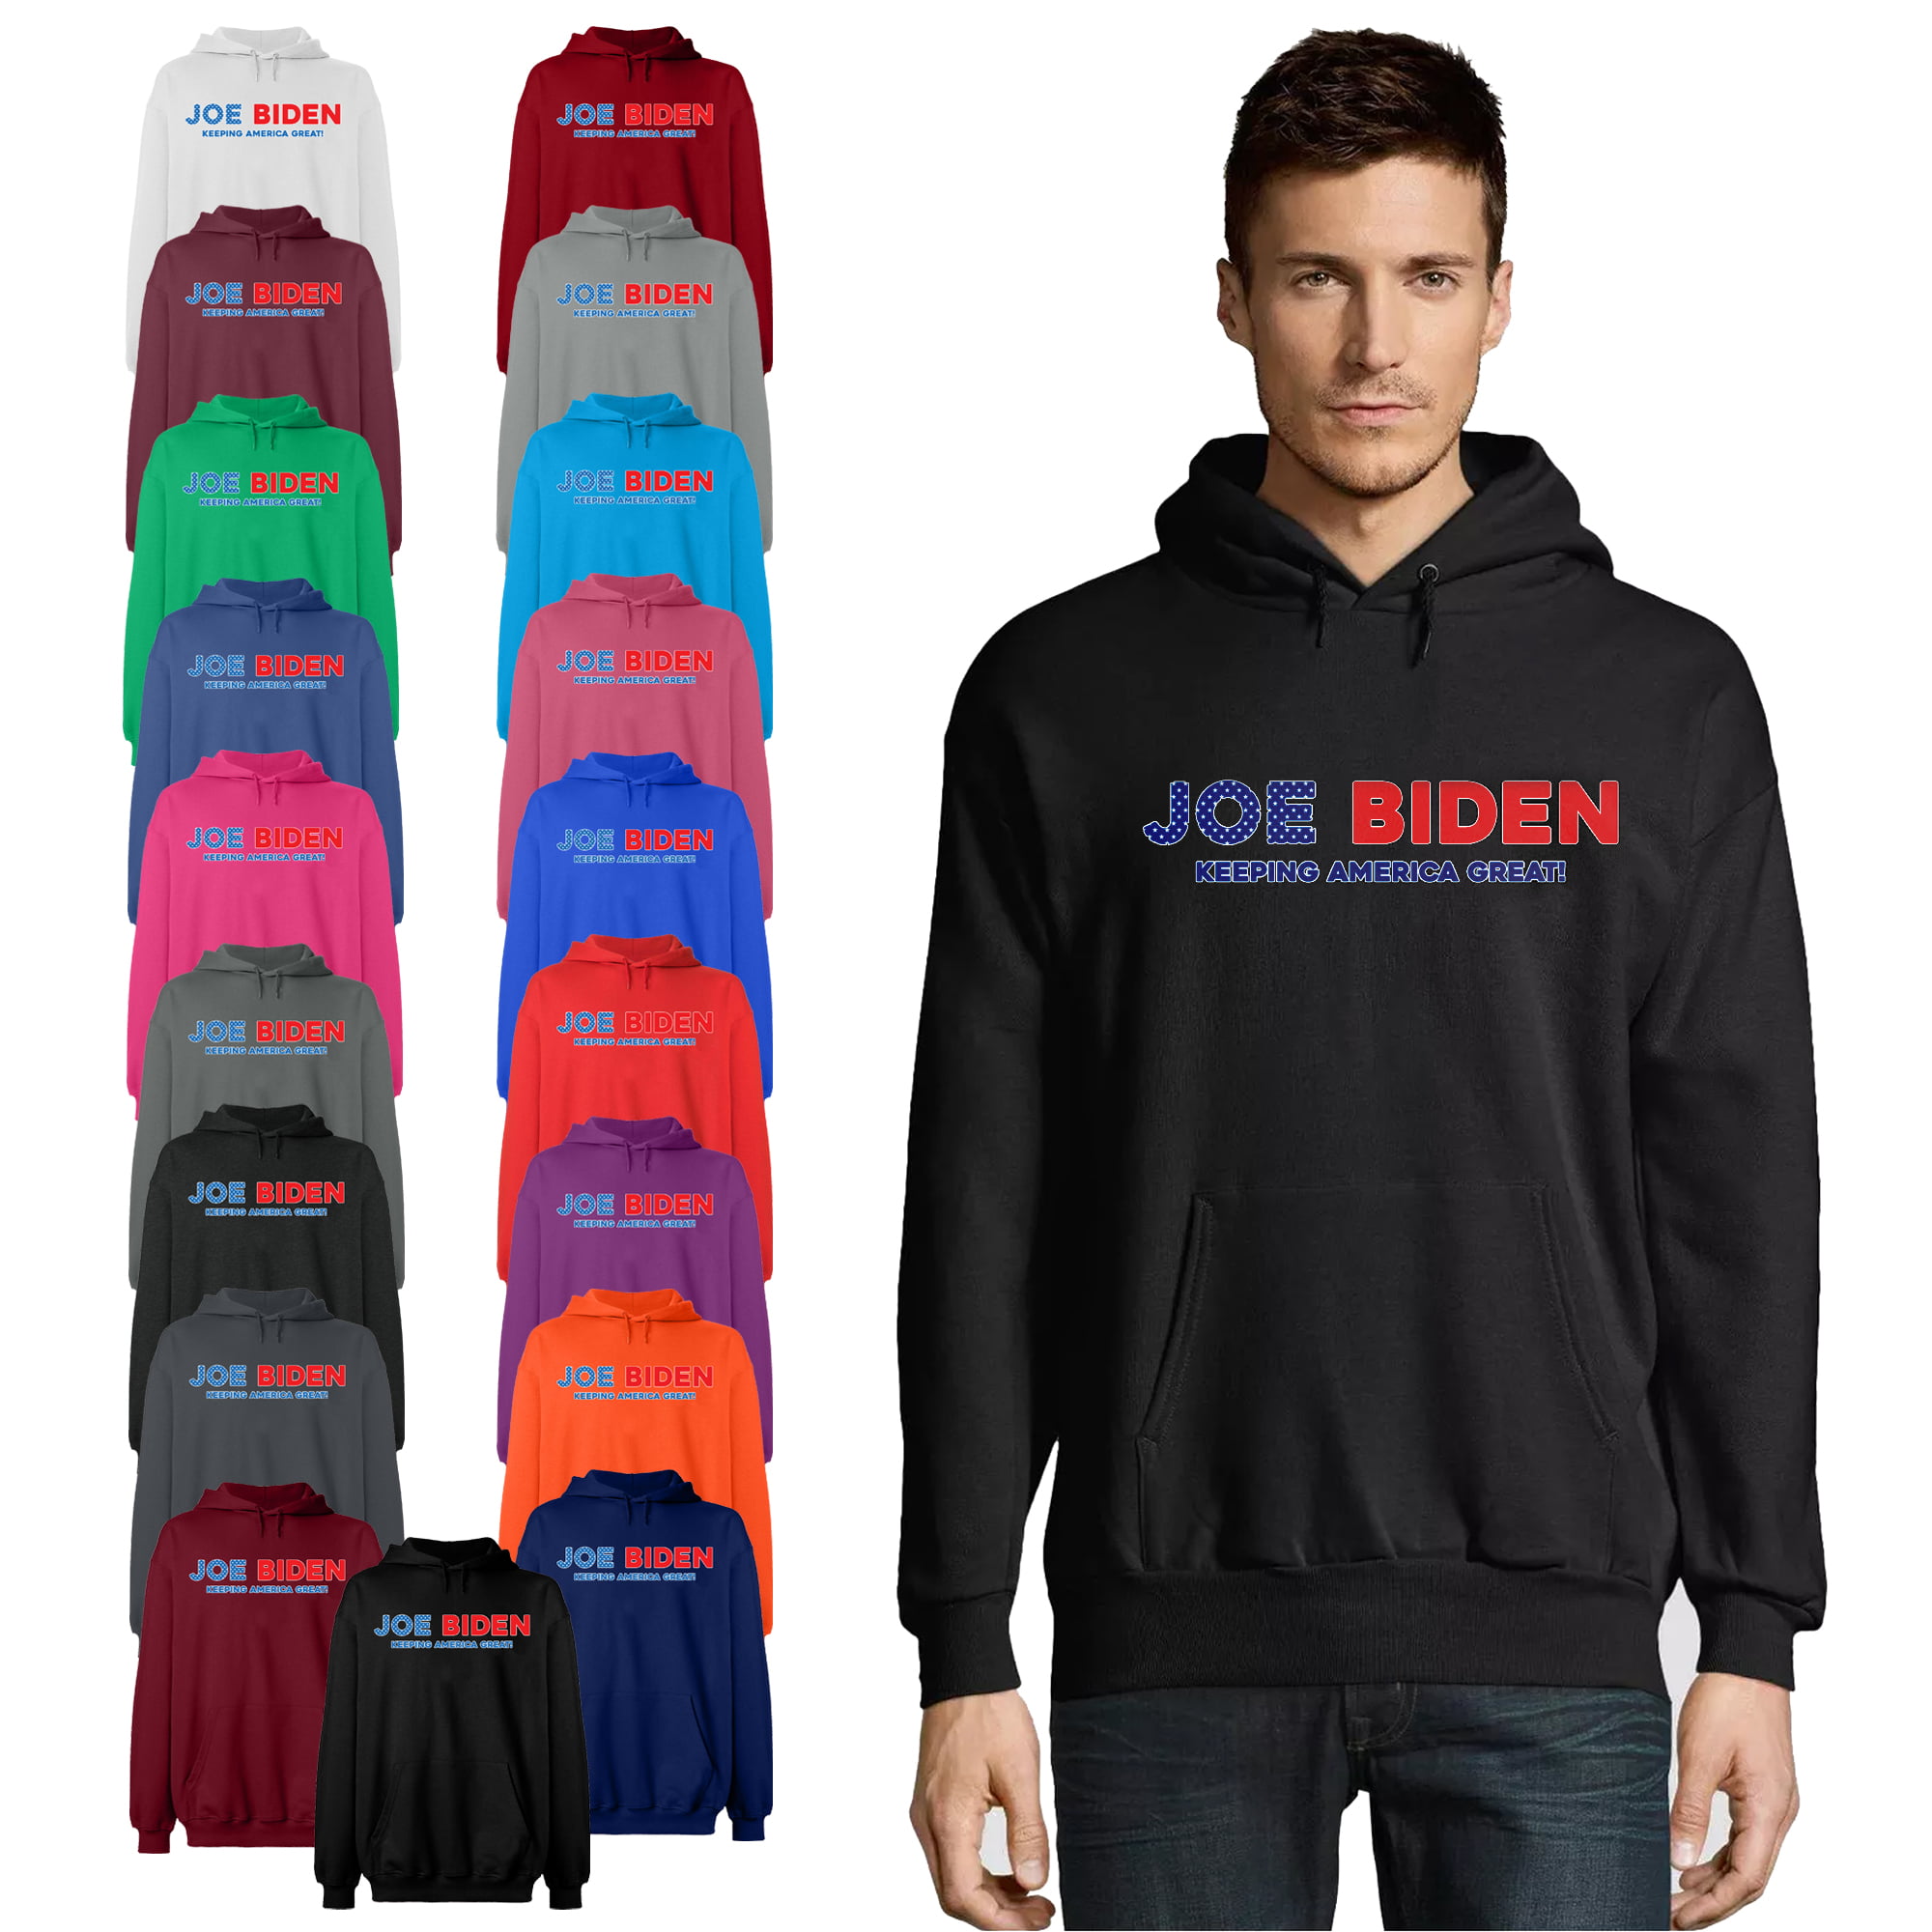 Joe Biden Unisex Hooded Sweaterwear Mens